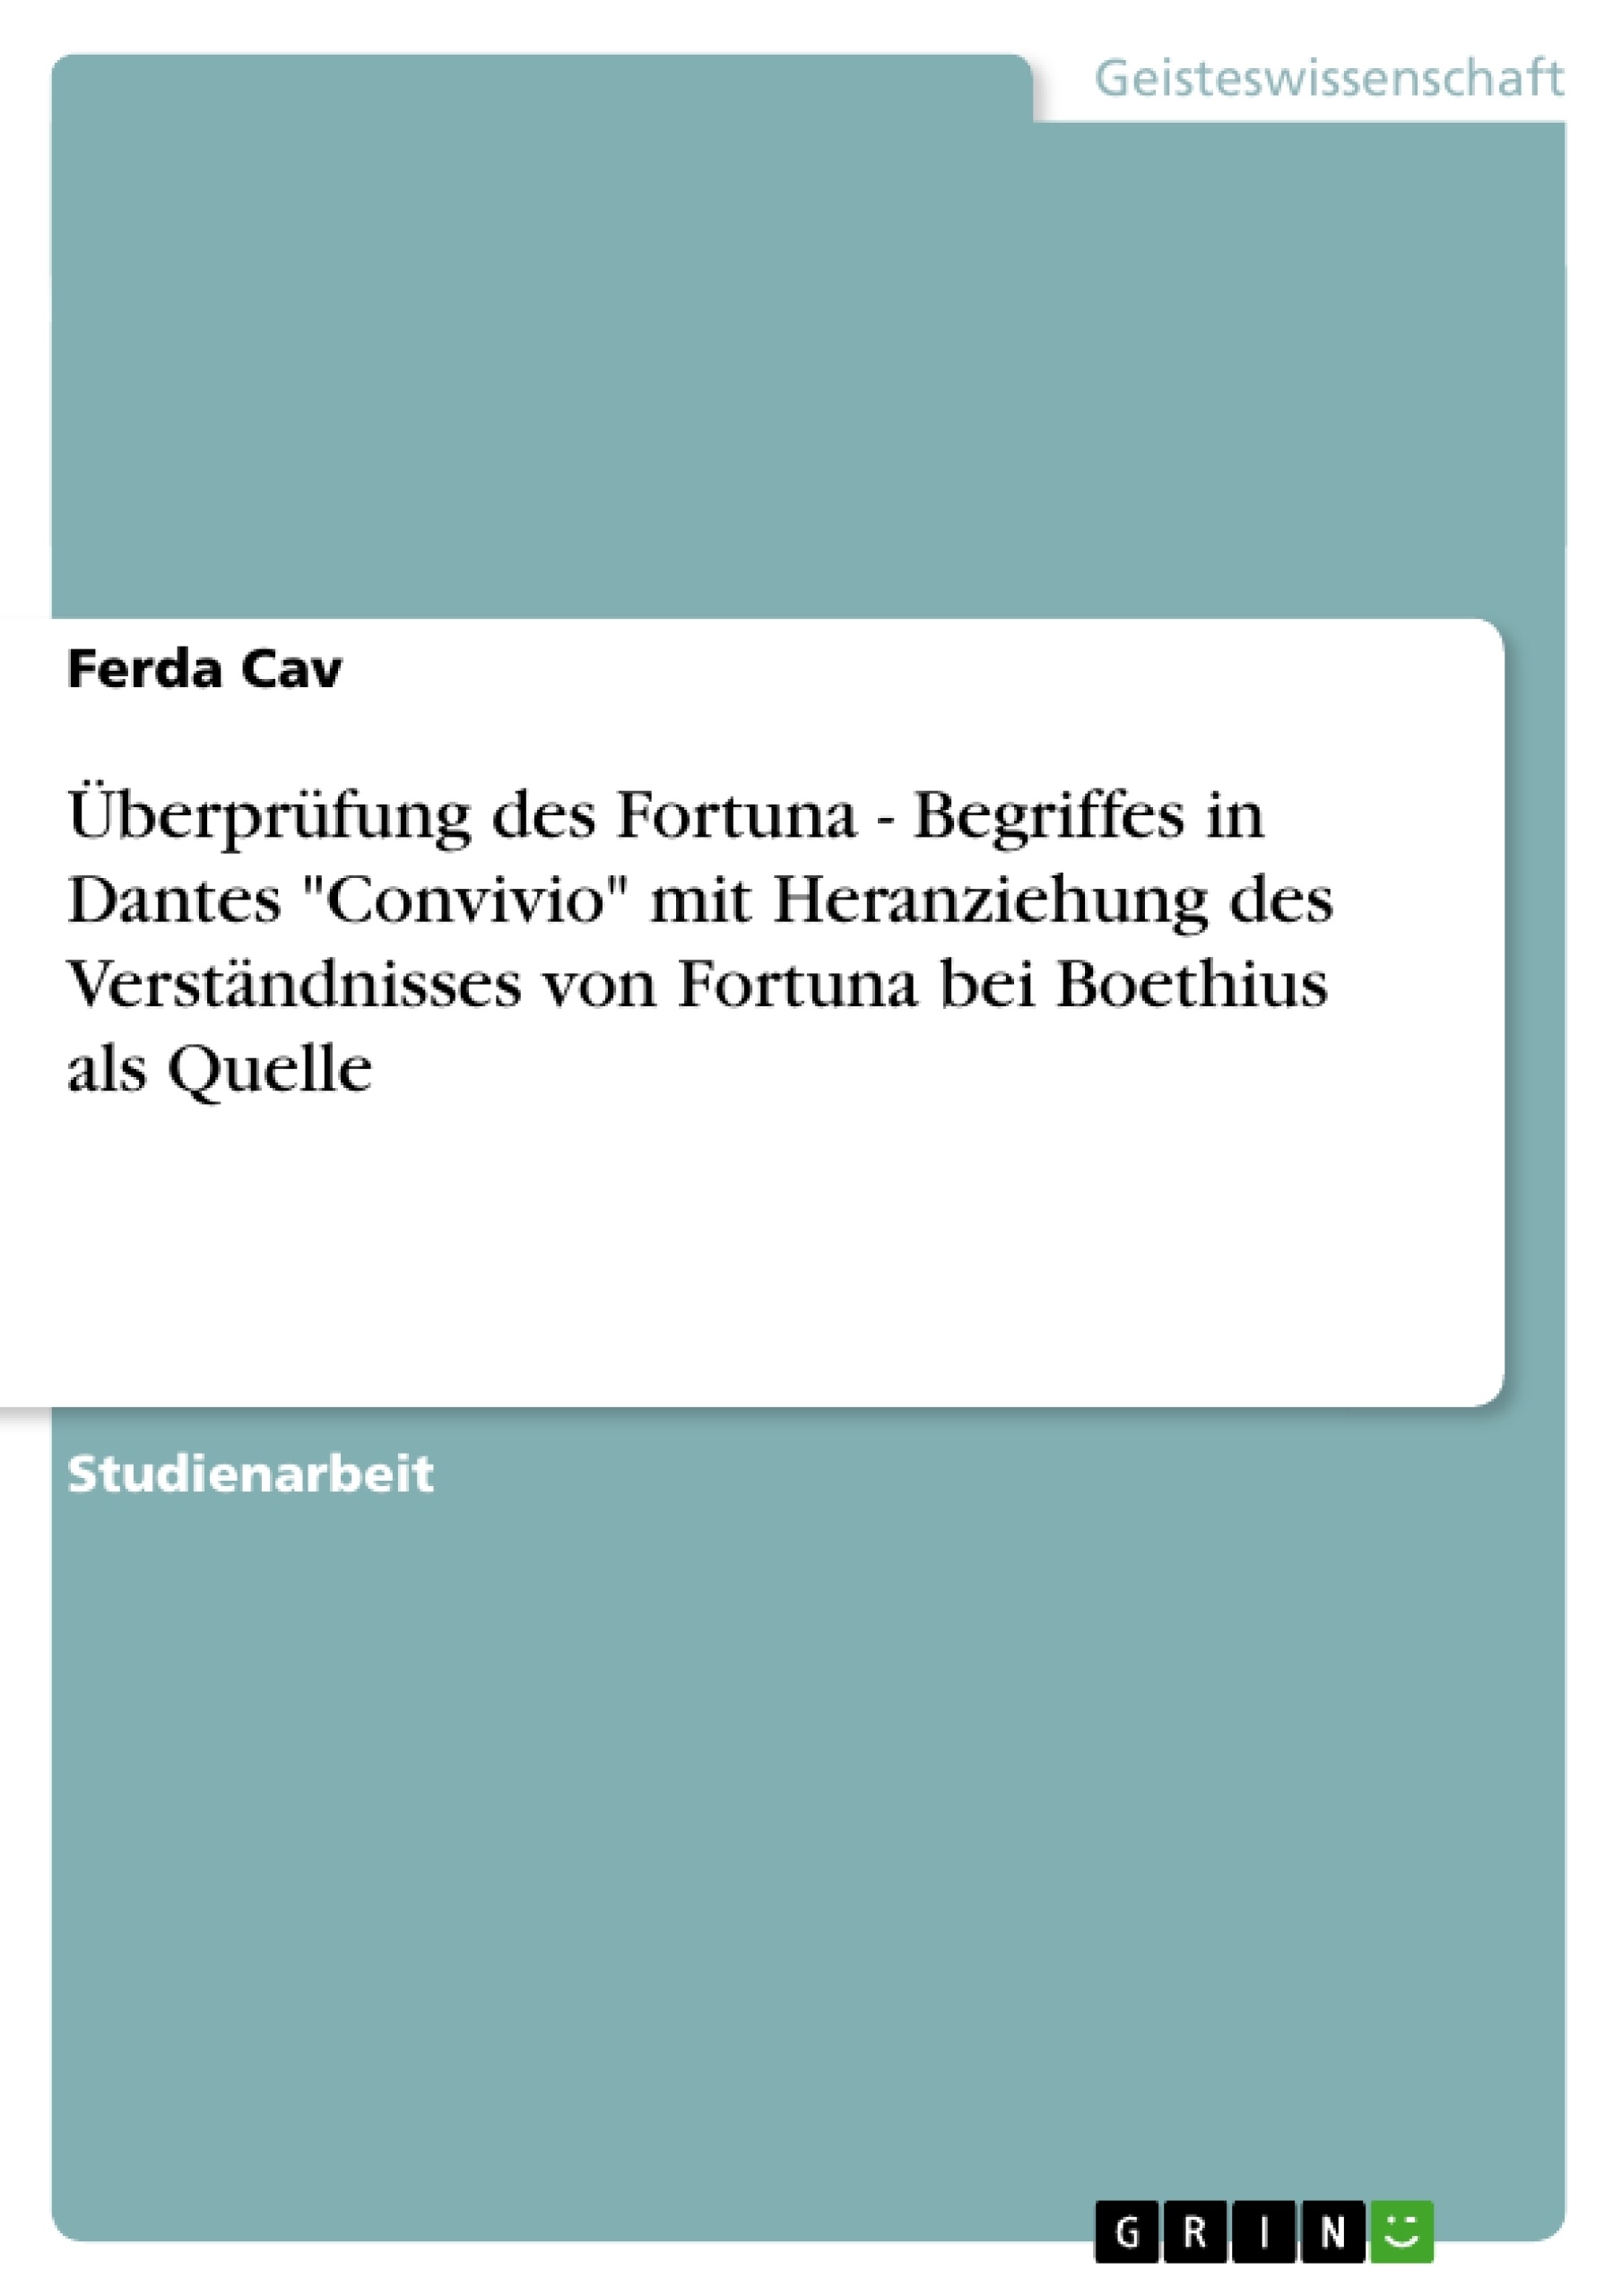 Título: Überprüfung des Fortuna - Begriffes in Dantes  "Convivio"  mit Heranziehung des Verständnisses von Fortuna bei Boethius als Quelle 